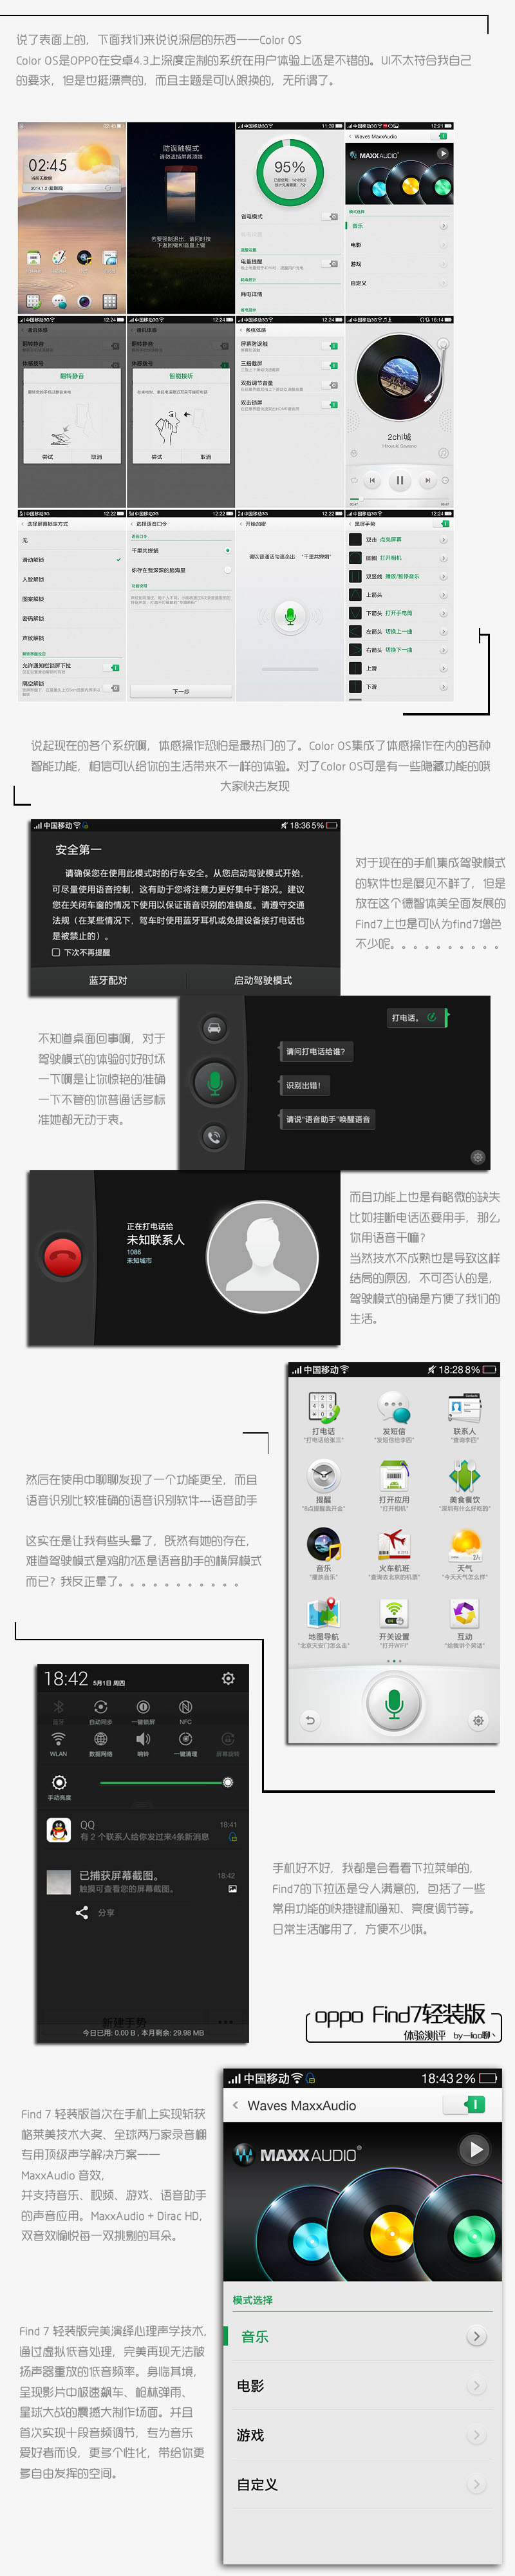 【OPPO Find7体验测评】越用越舒服的手机Find7综测 by——liao聊丶图片2